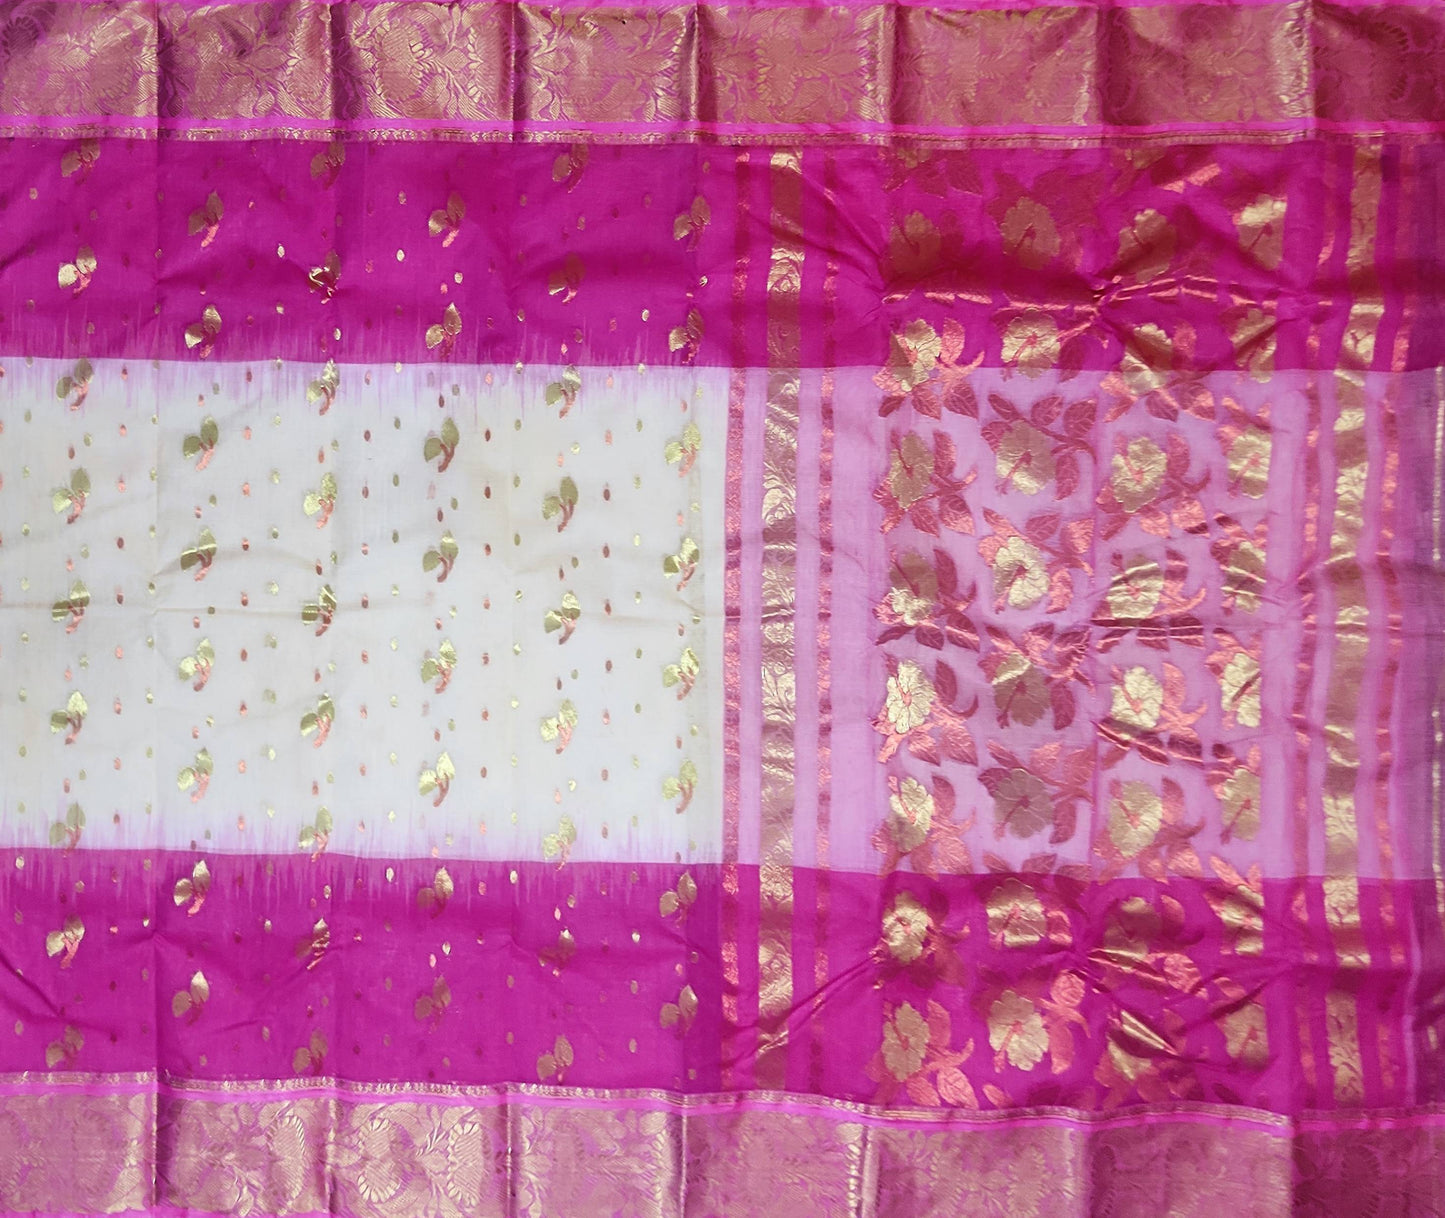 Pradip Fabrics Woven Tant Banarasi Cream and Pink Color Saree